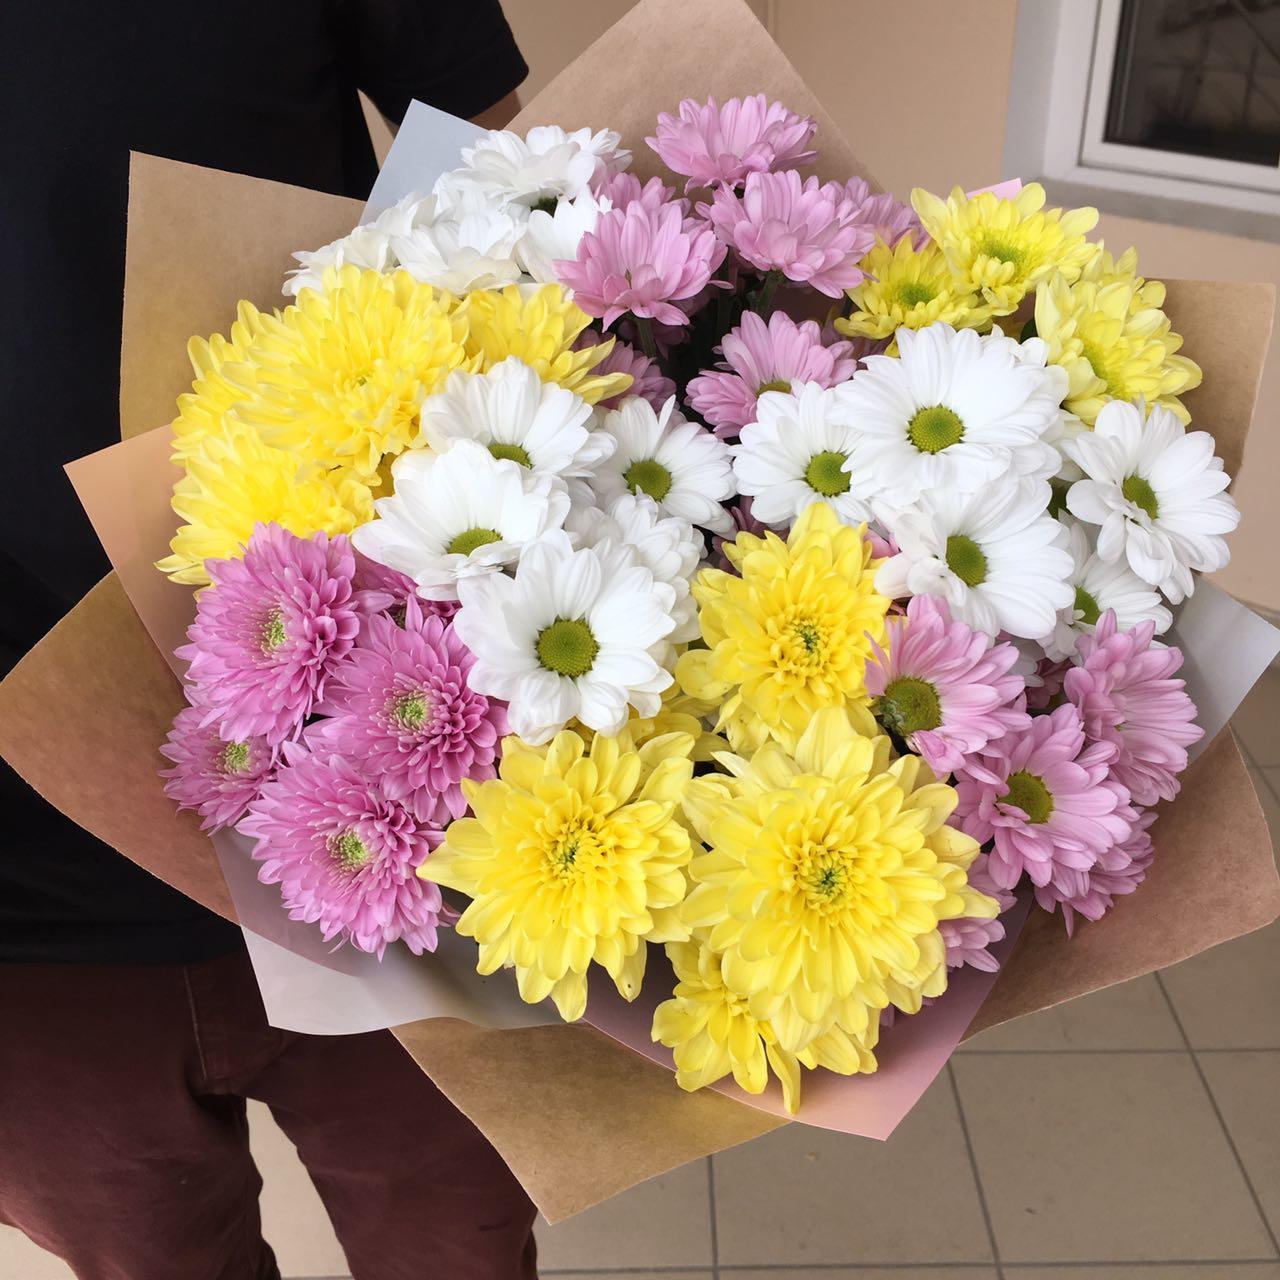 Фото заказанного и доставленного букета из разноцветных хризантем